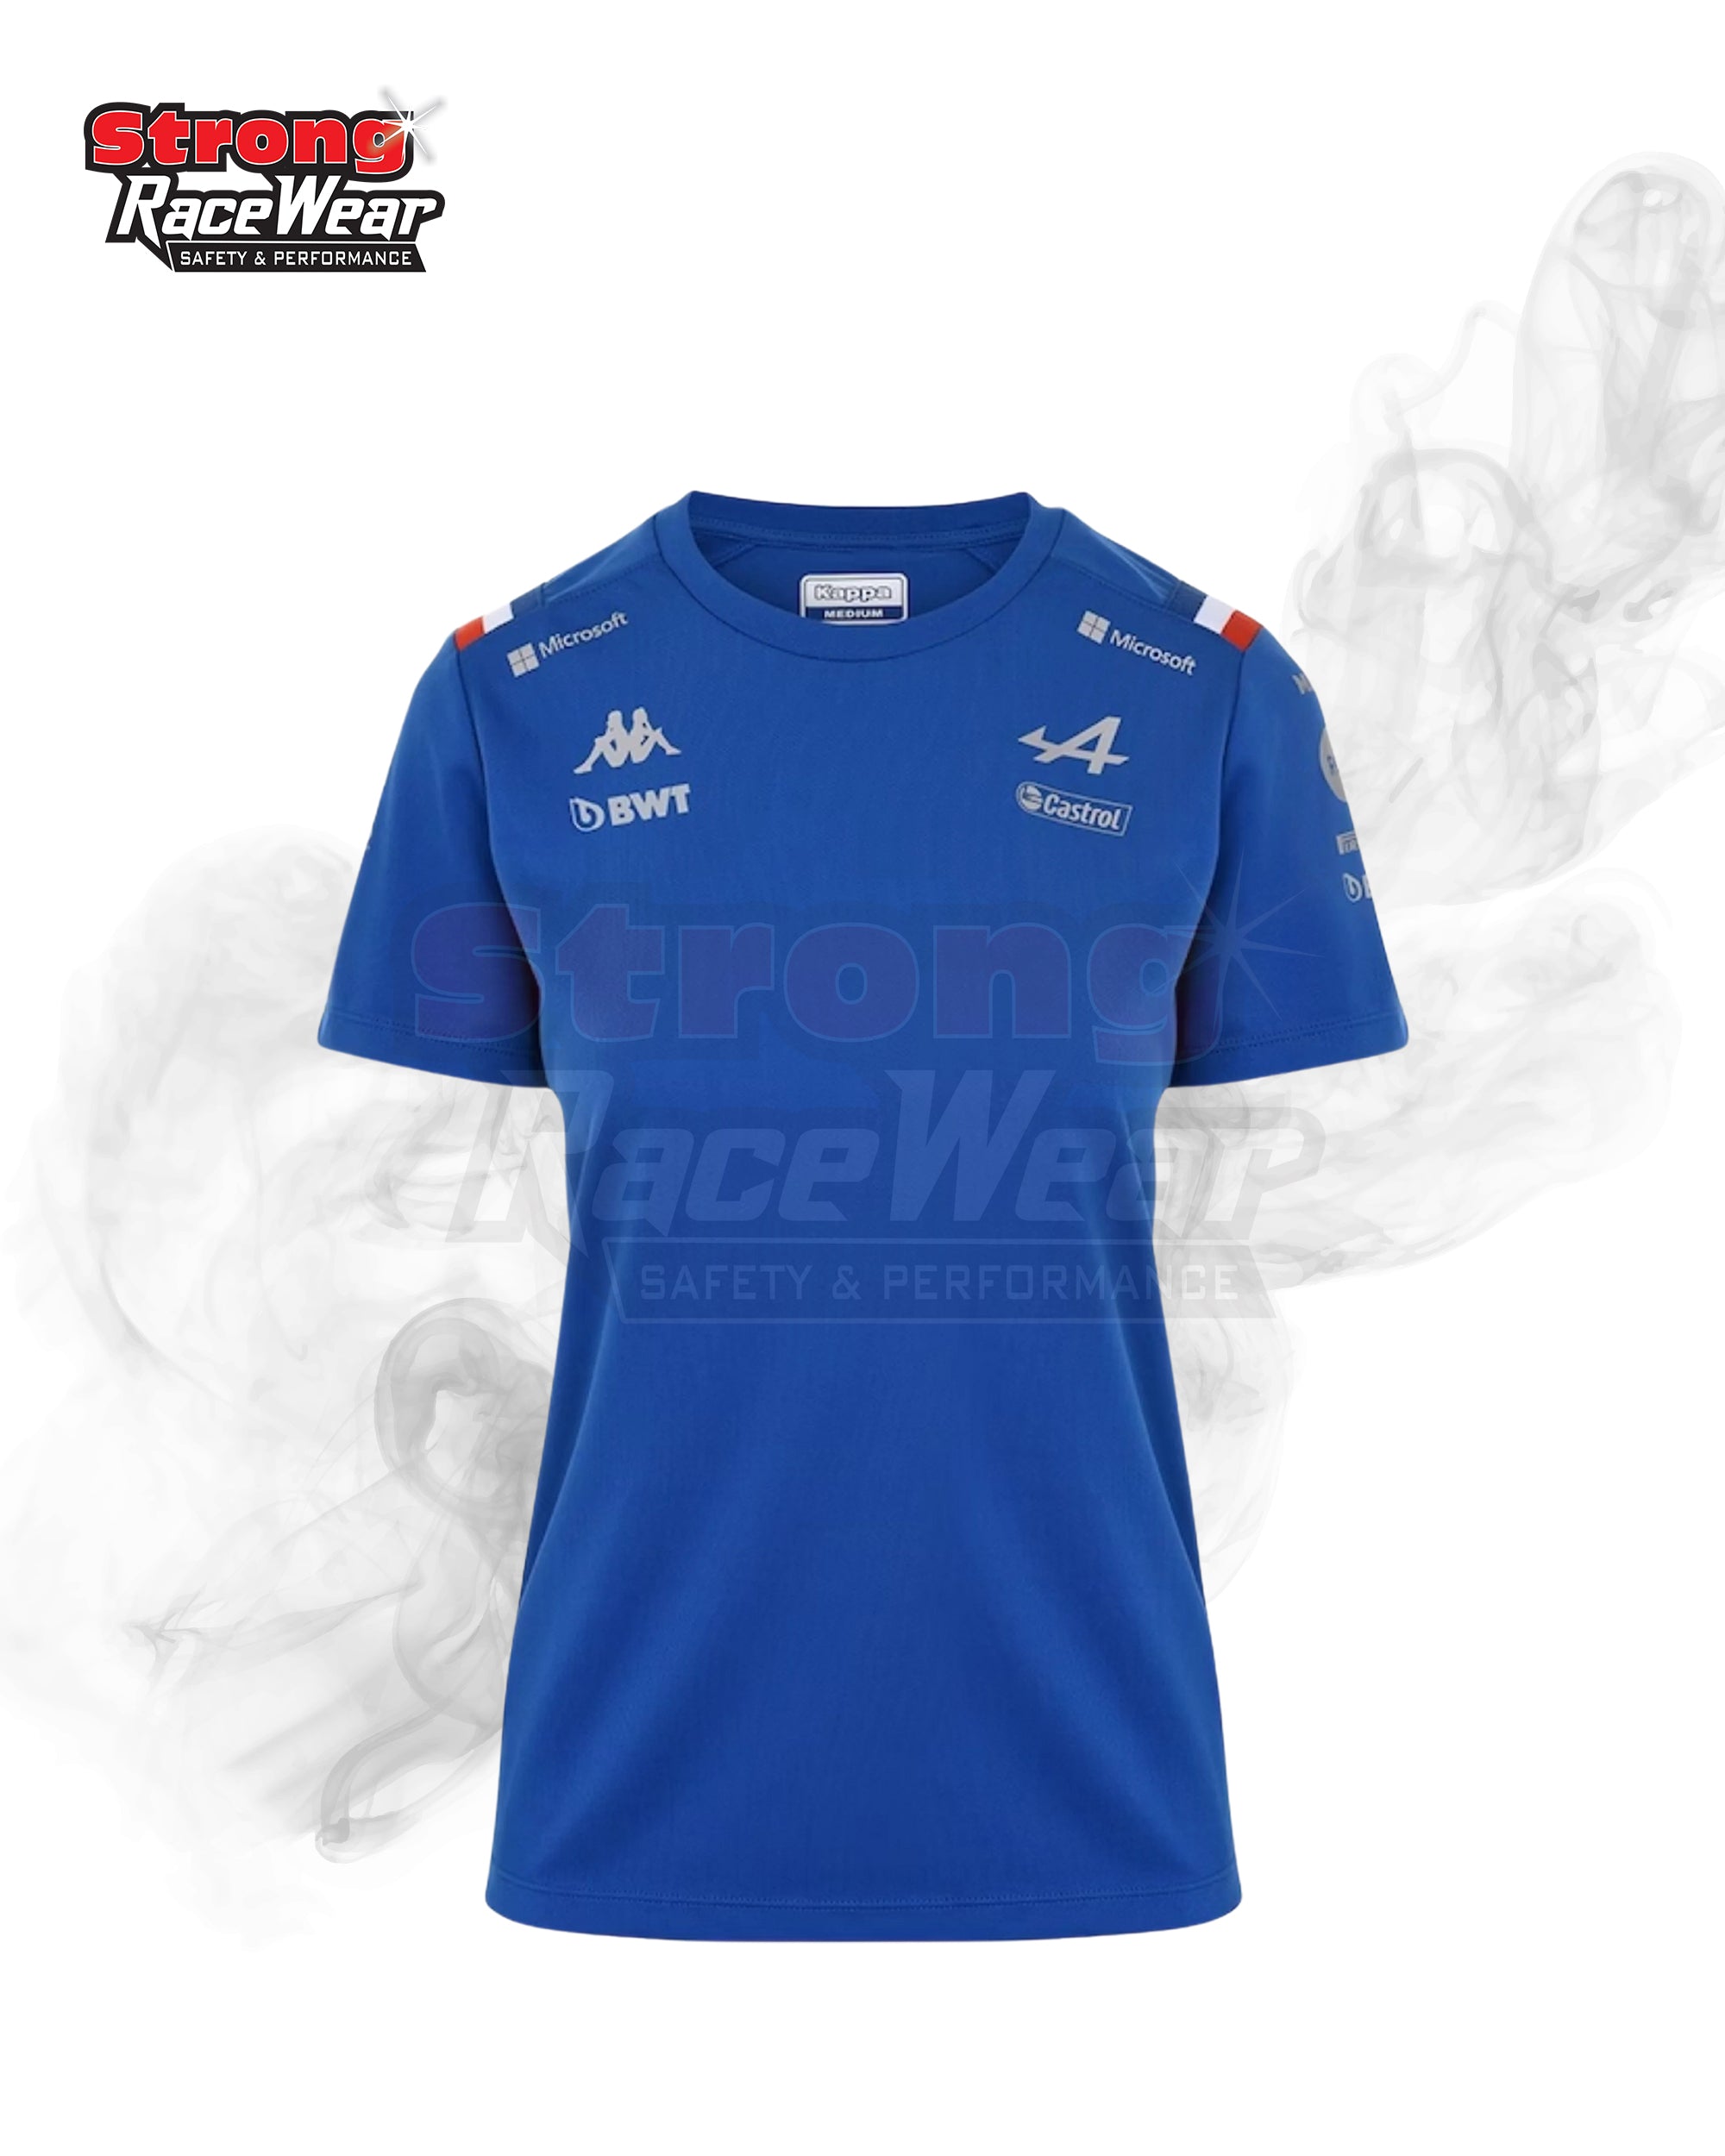 BWT Alpine F1 Team 2022 T-Shirt